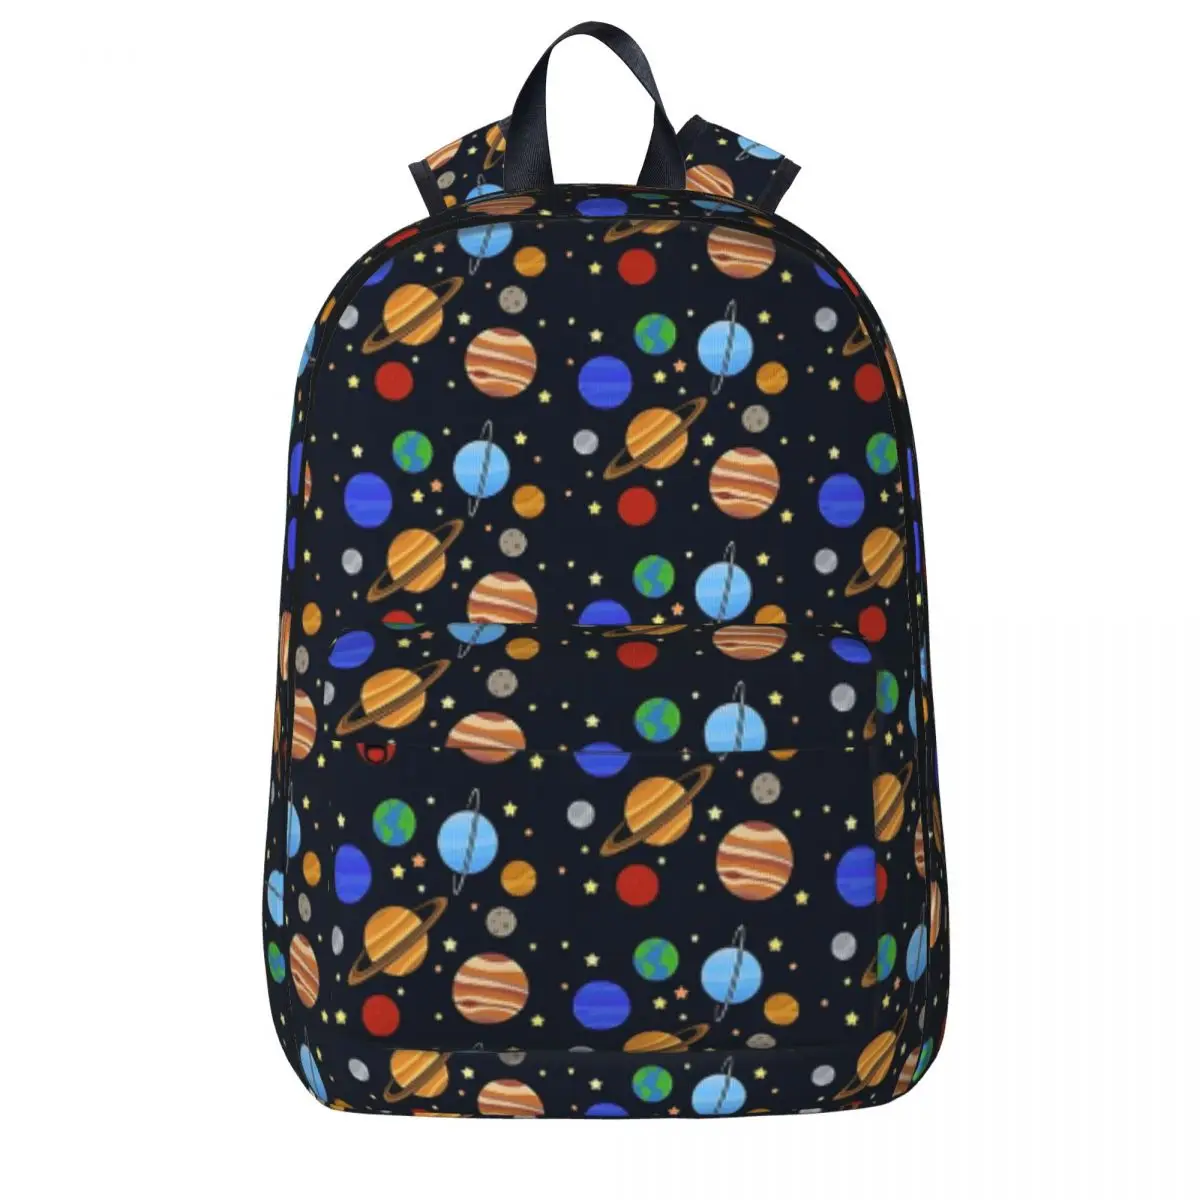 

Рюкзаки с солнечной системой, вместительная Студенческая сумка для книг, сумка на плечо, рюкзак для ноутбука, водонепроницаемый дорожный рюкзак, школьная сумка